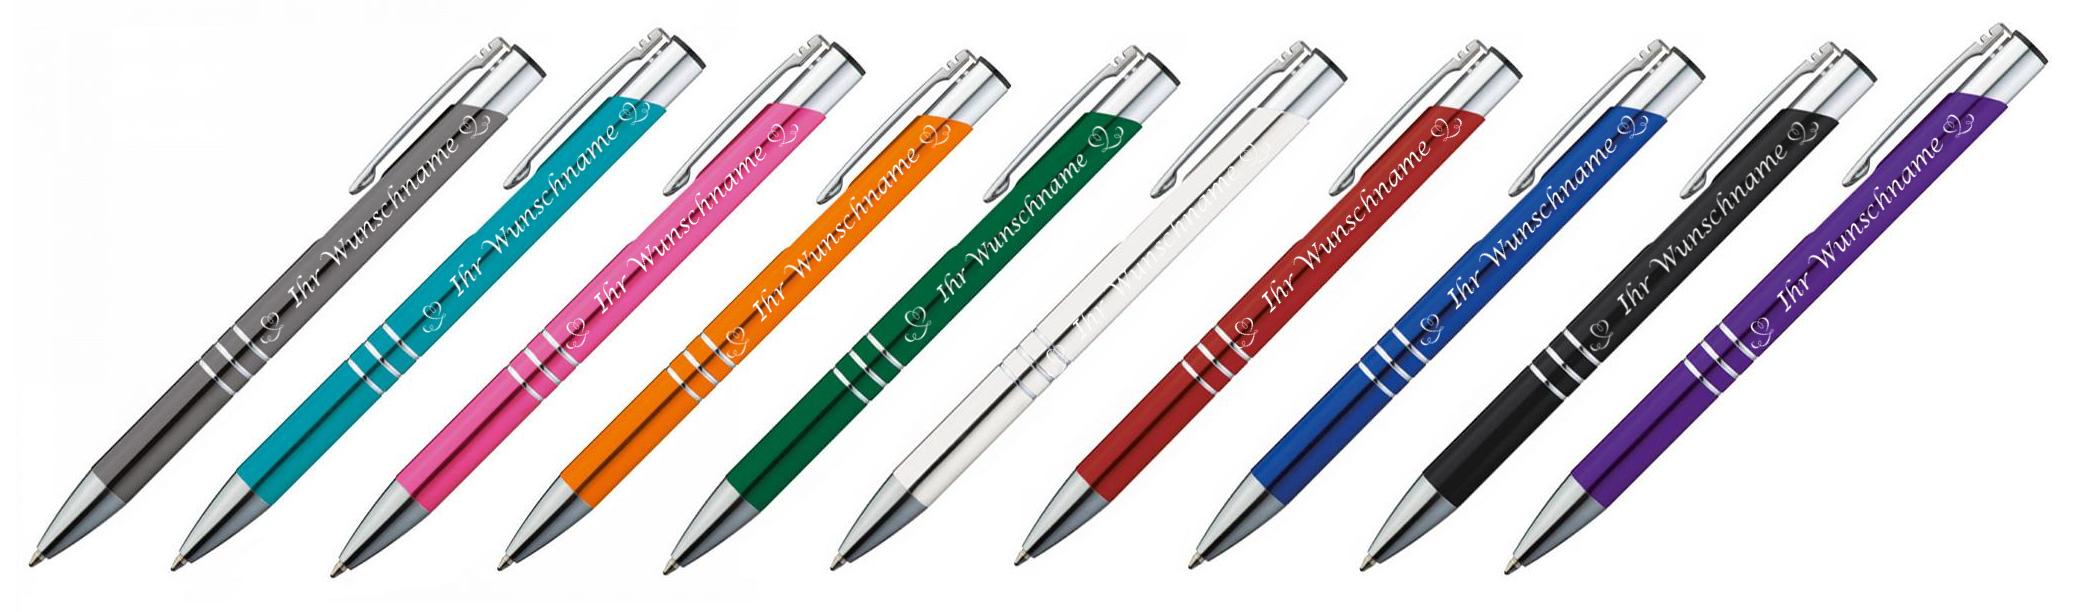 10 Kugelschreiber aus Metall Farbe rot